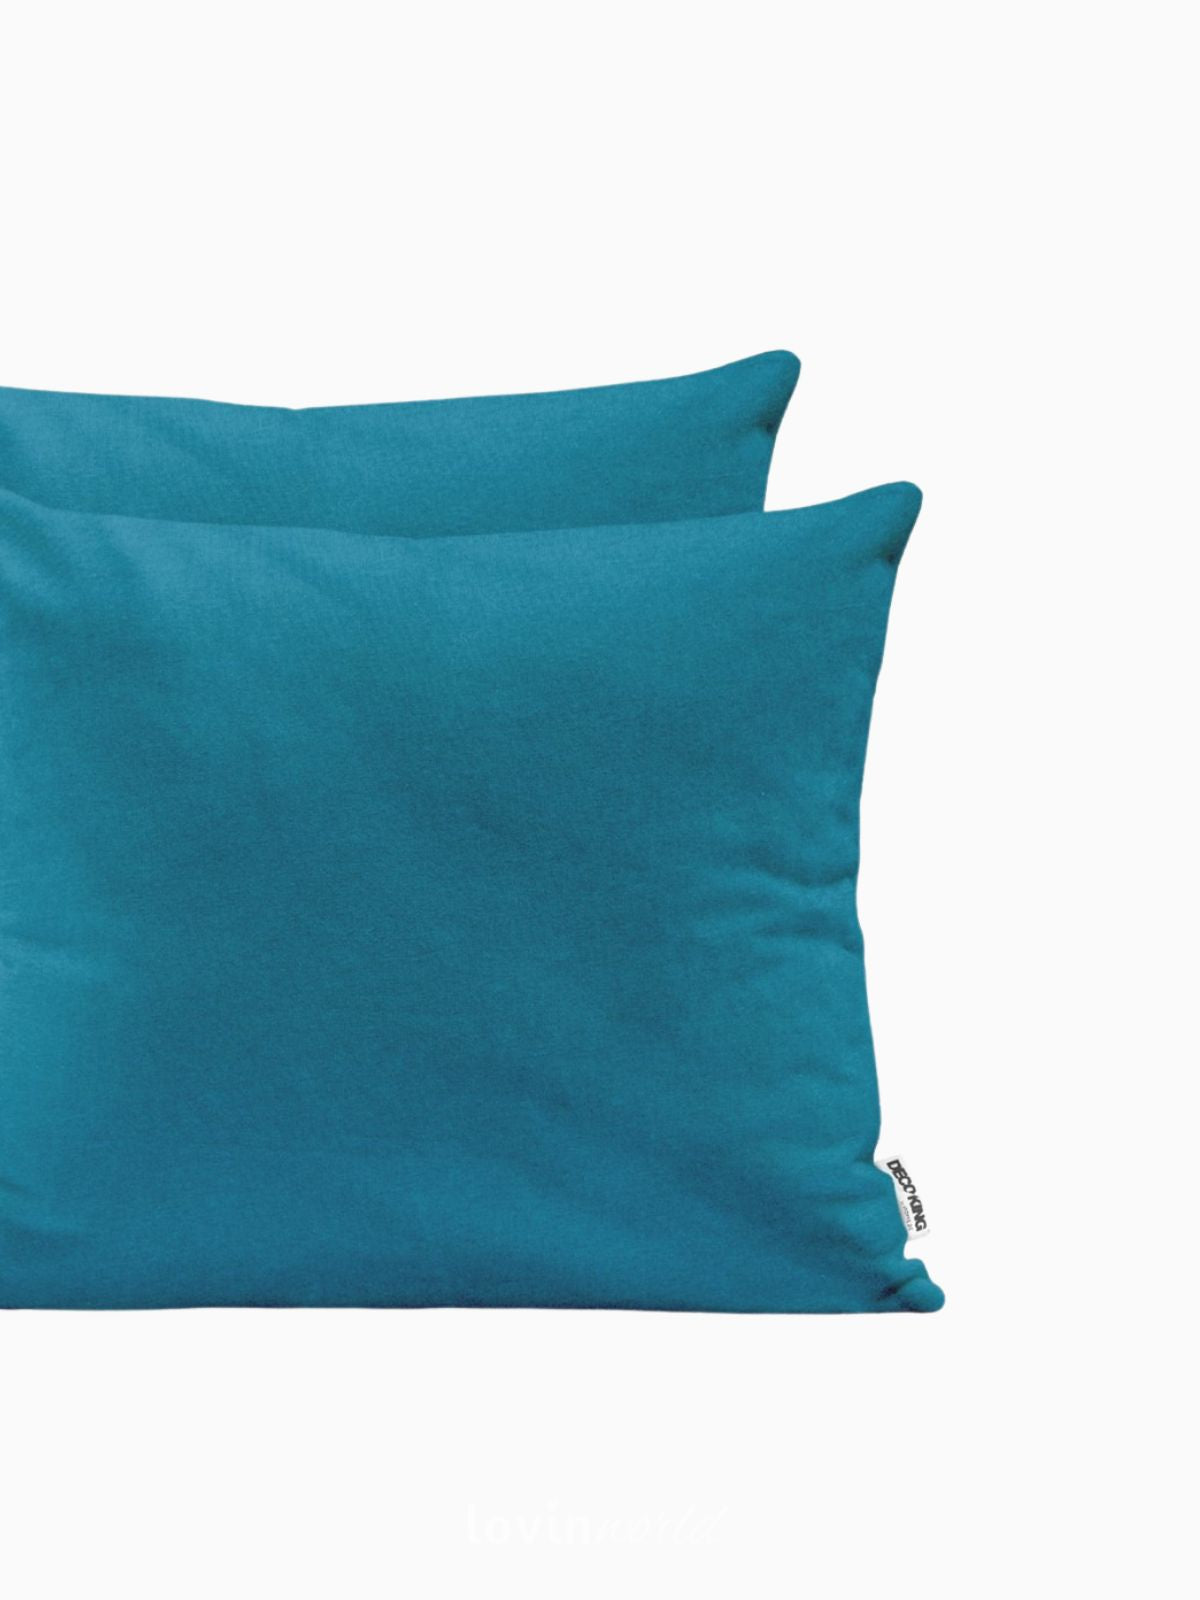 2 Federe per cuscino Amber in colore blu 50x50 cm.-3